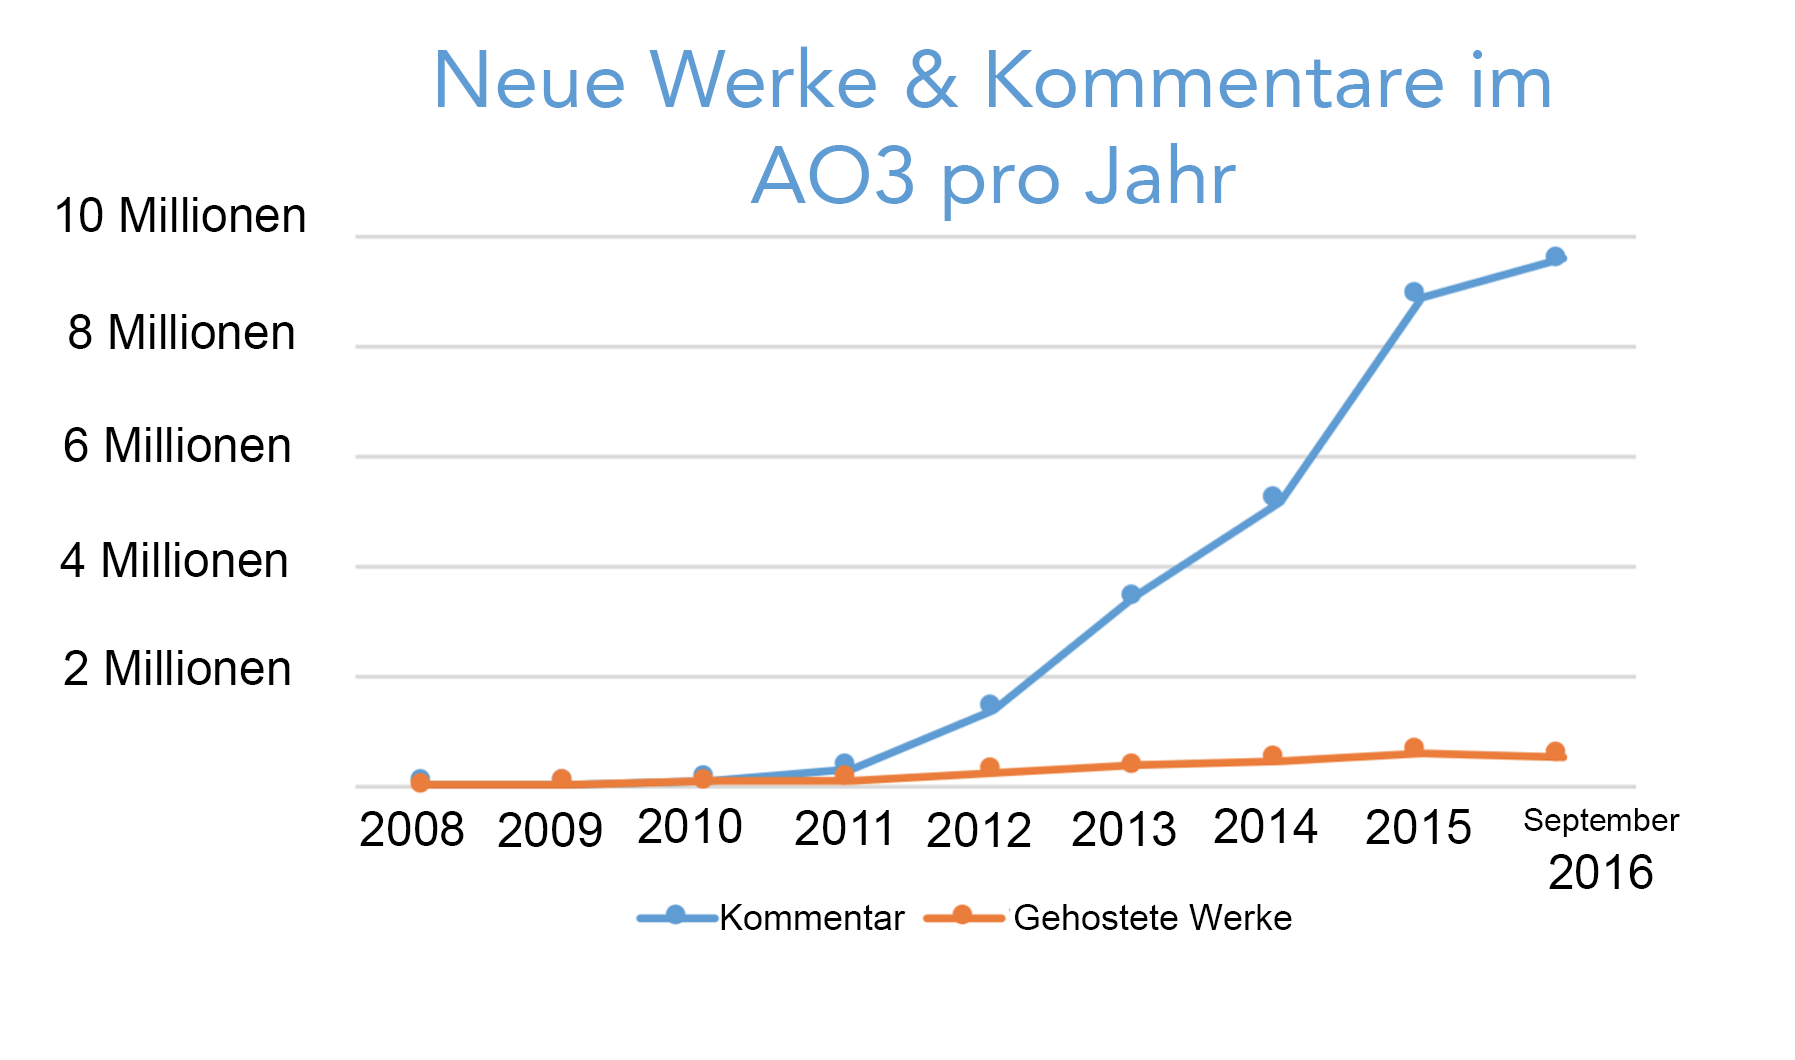 Wachstumskurve der jährlich im AO3 erstellten Werke und Kommentare, beginnend mit Null im Jahr 2008 auf über 500.000 Werke und 9,5 Millionen Kommentare allein in diesem Jahr